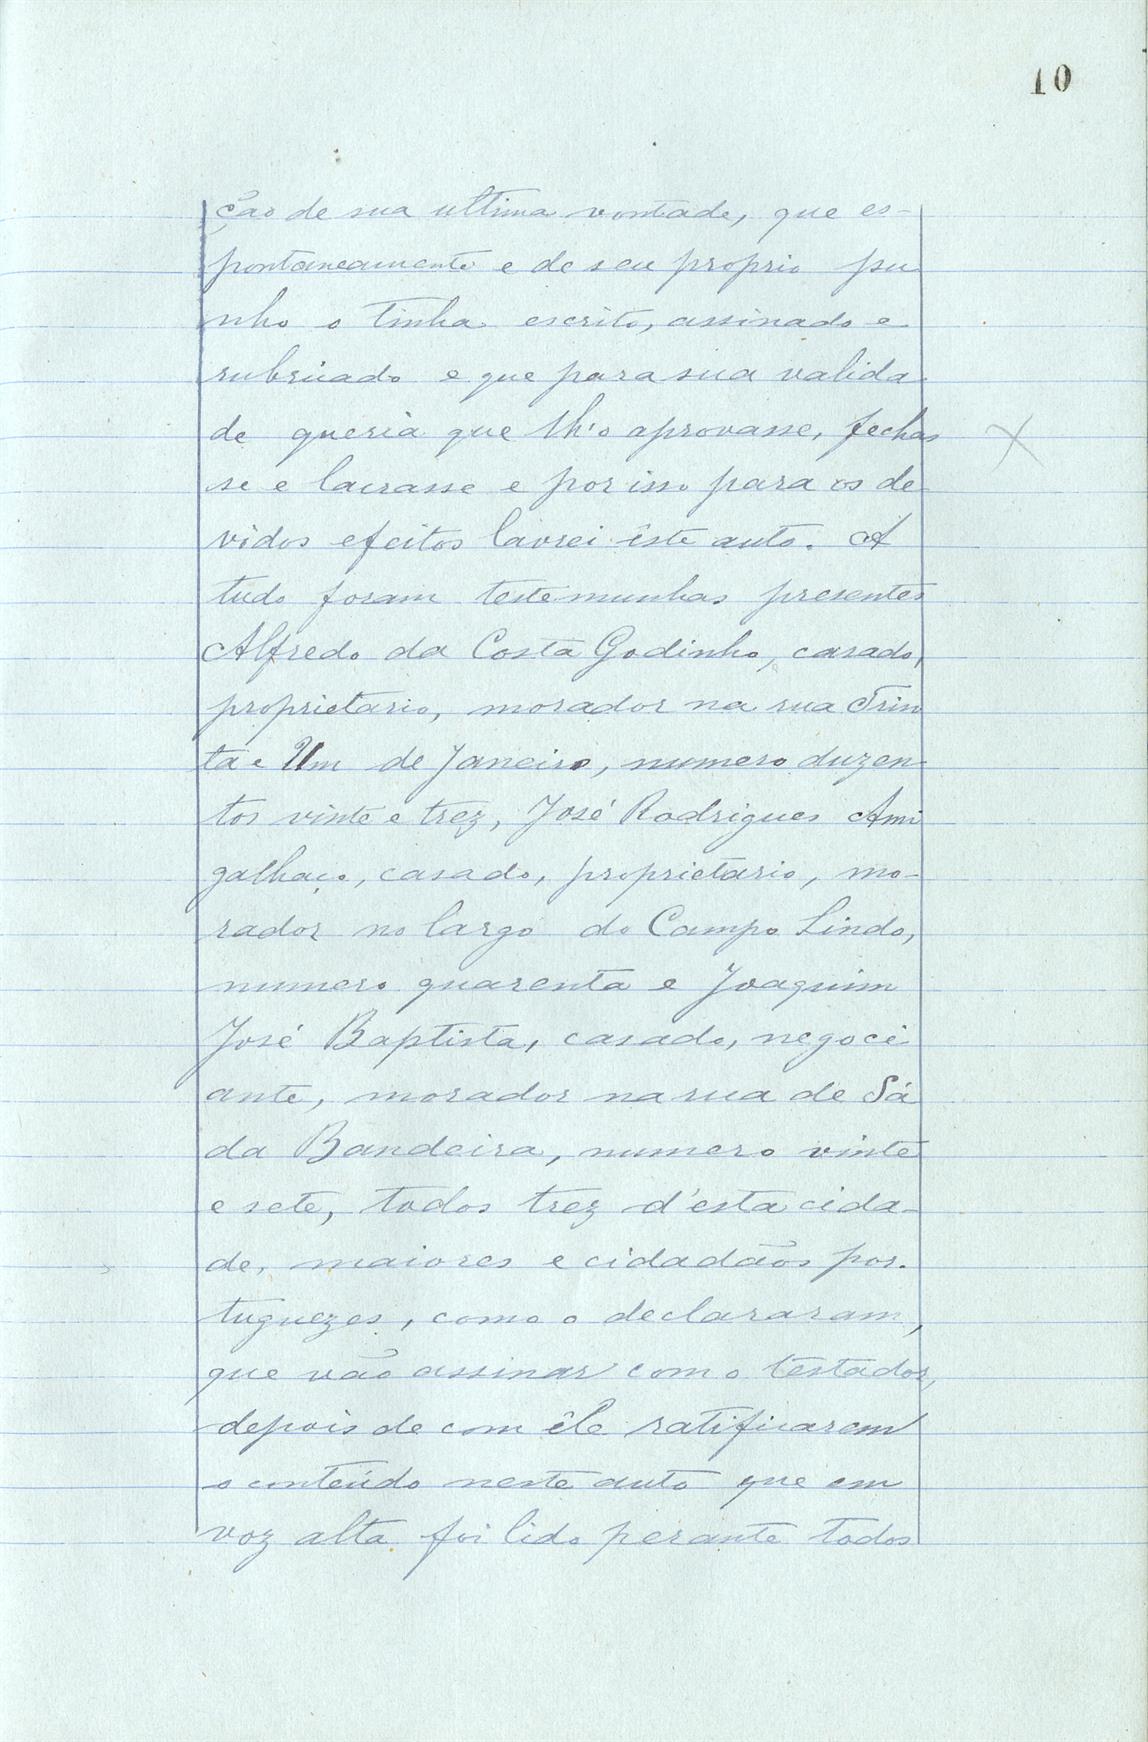 Registo do testamento com que faleceu Adolfo Pinto da Silva, proprietário, casado em segundas núpcias com Branca Montenegro Chaves da Silva